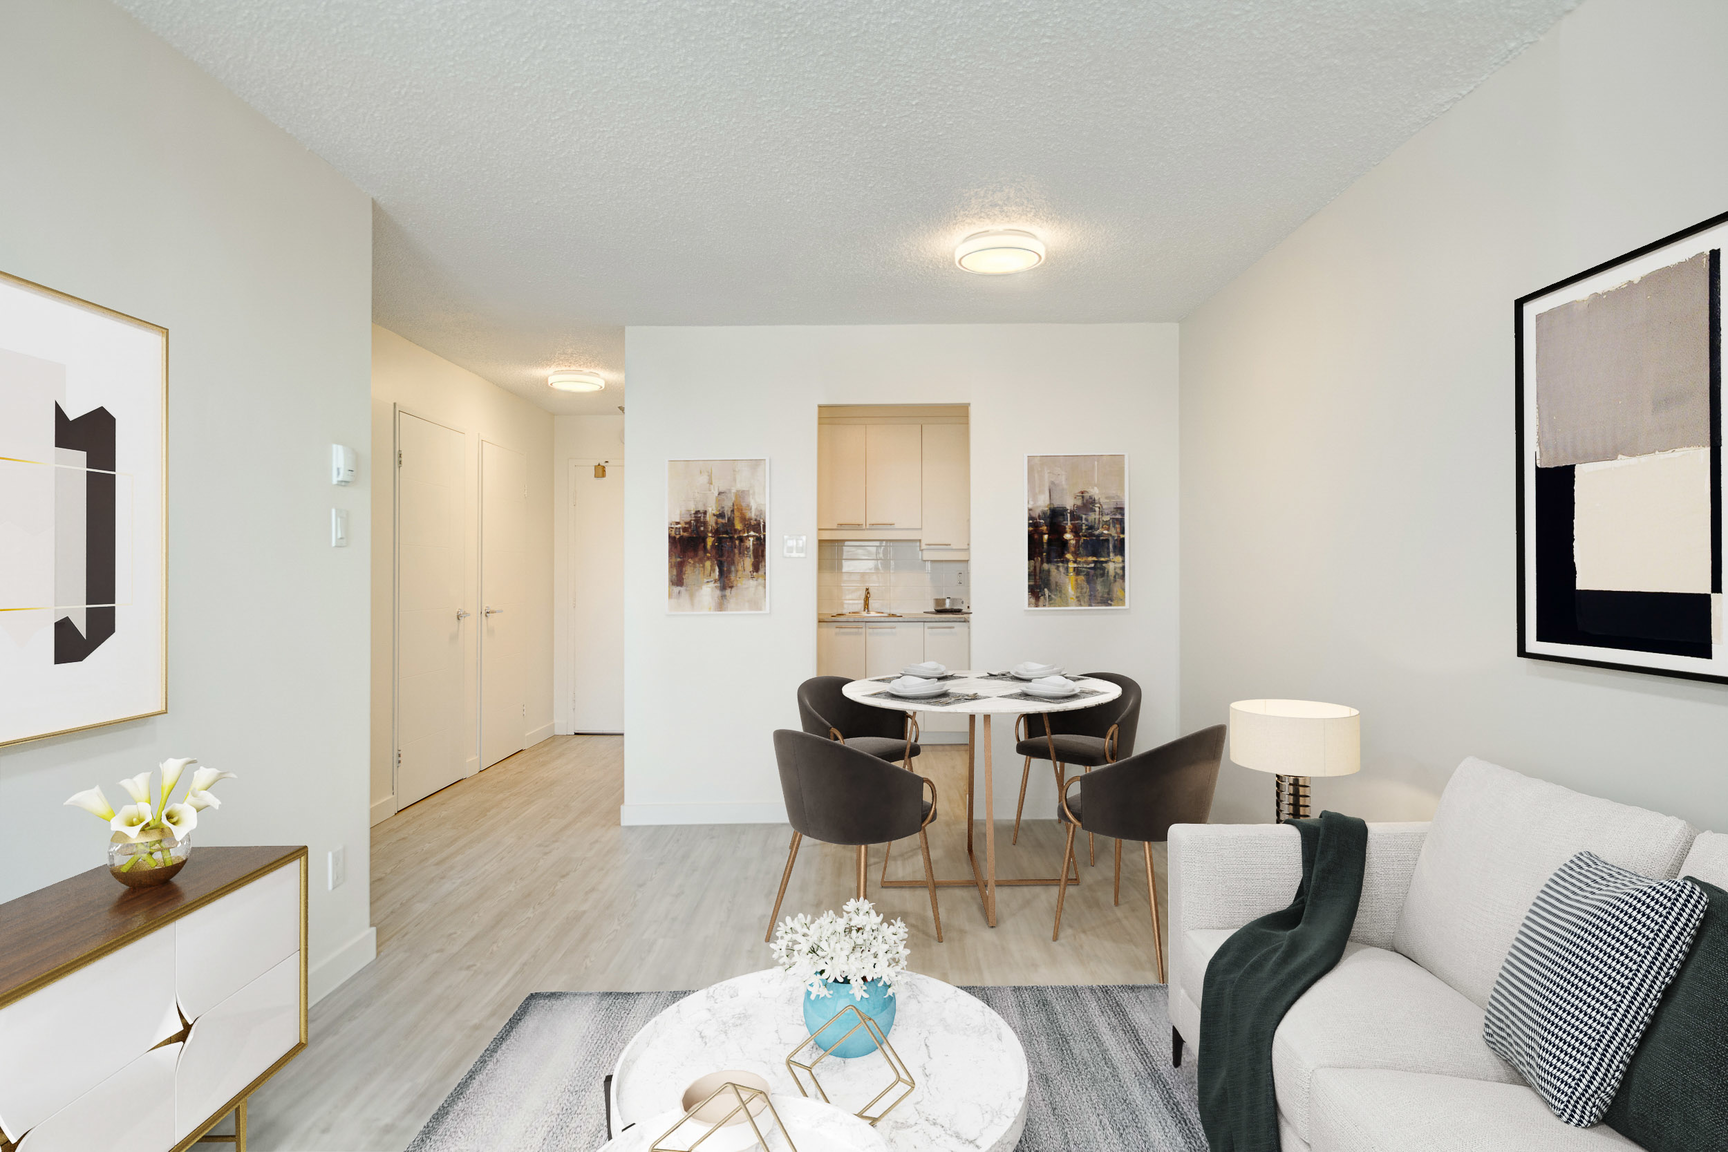 Studio / Bachelor Apartments for rent in Laval at Le Quatre Cent - Photo 01 - RentQuebecApartments – L407182